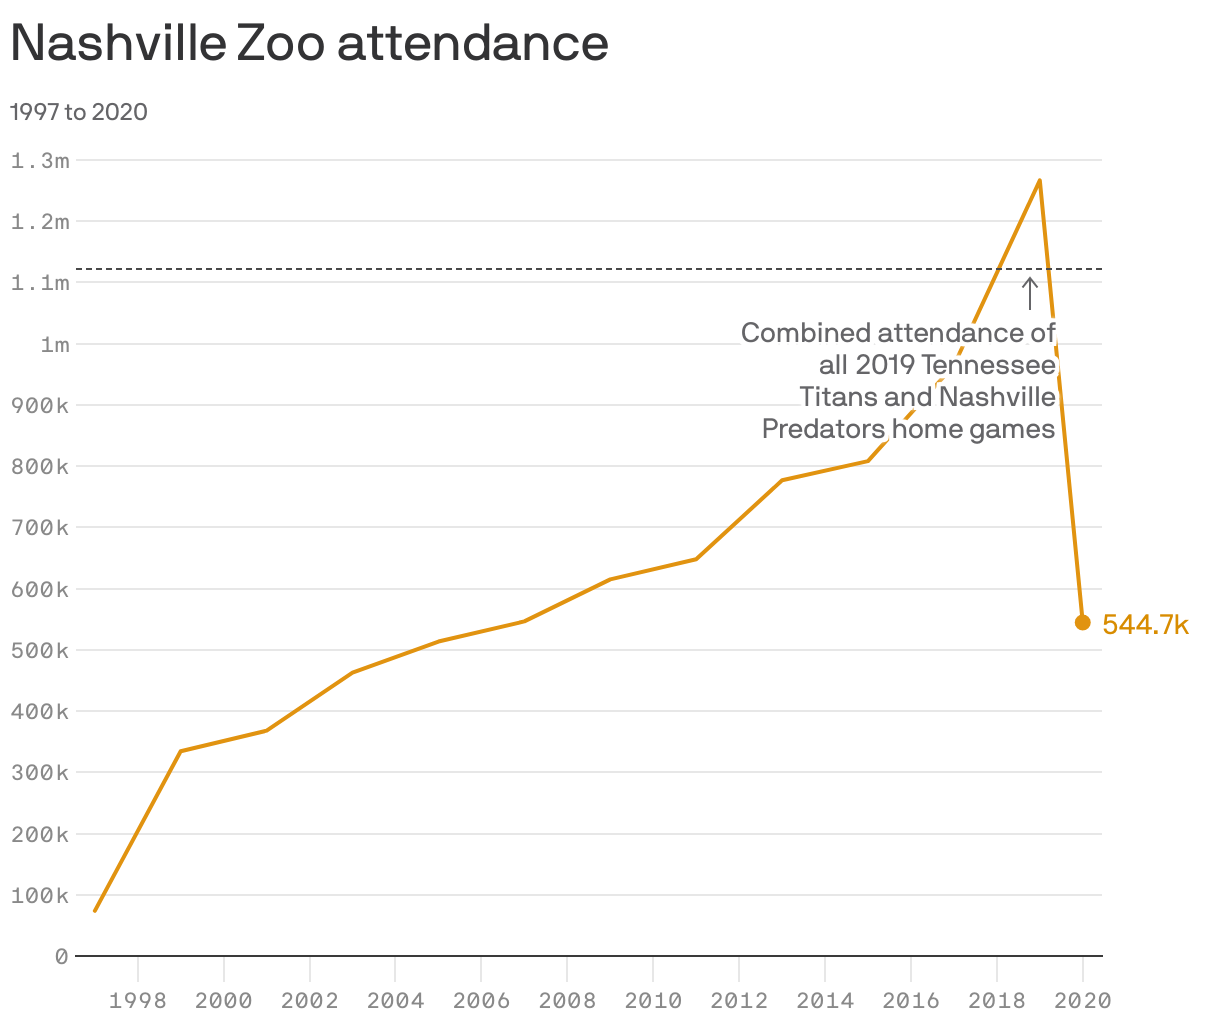 Nashville Zoo attendance